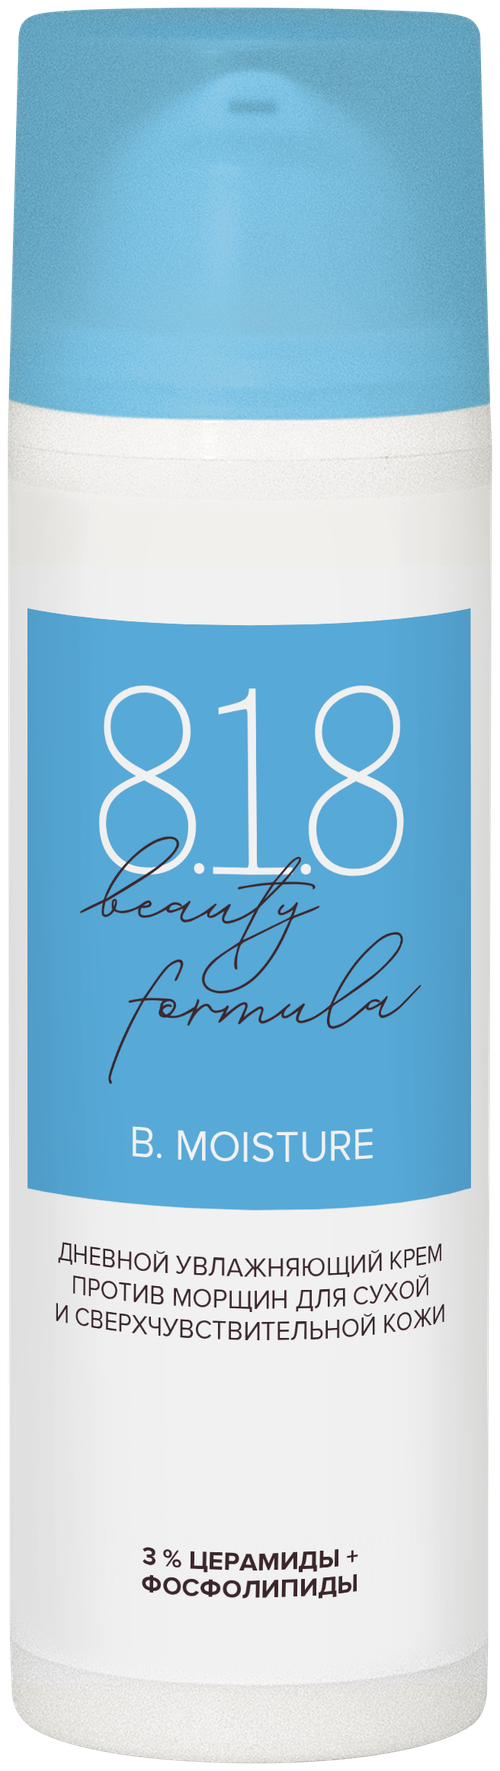 8.1.8 beauty formula дневной увлажняющий крем против морщин для сухой и сверхчувствительной кожи, 50 мл